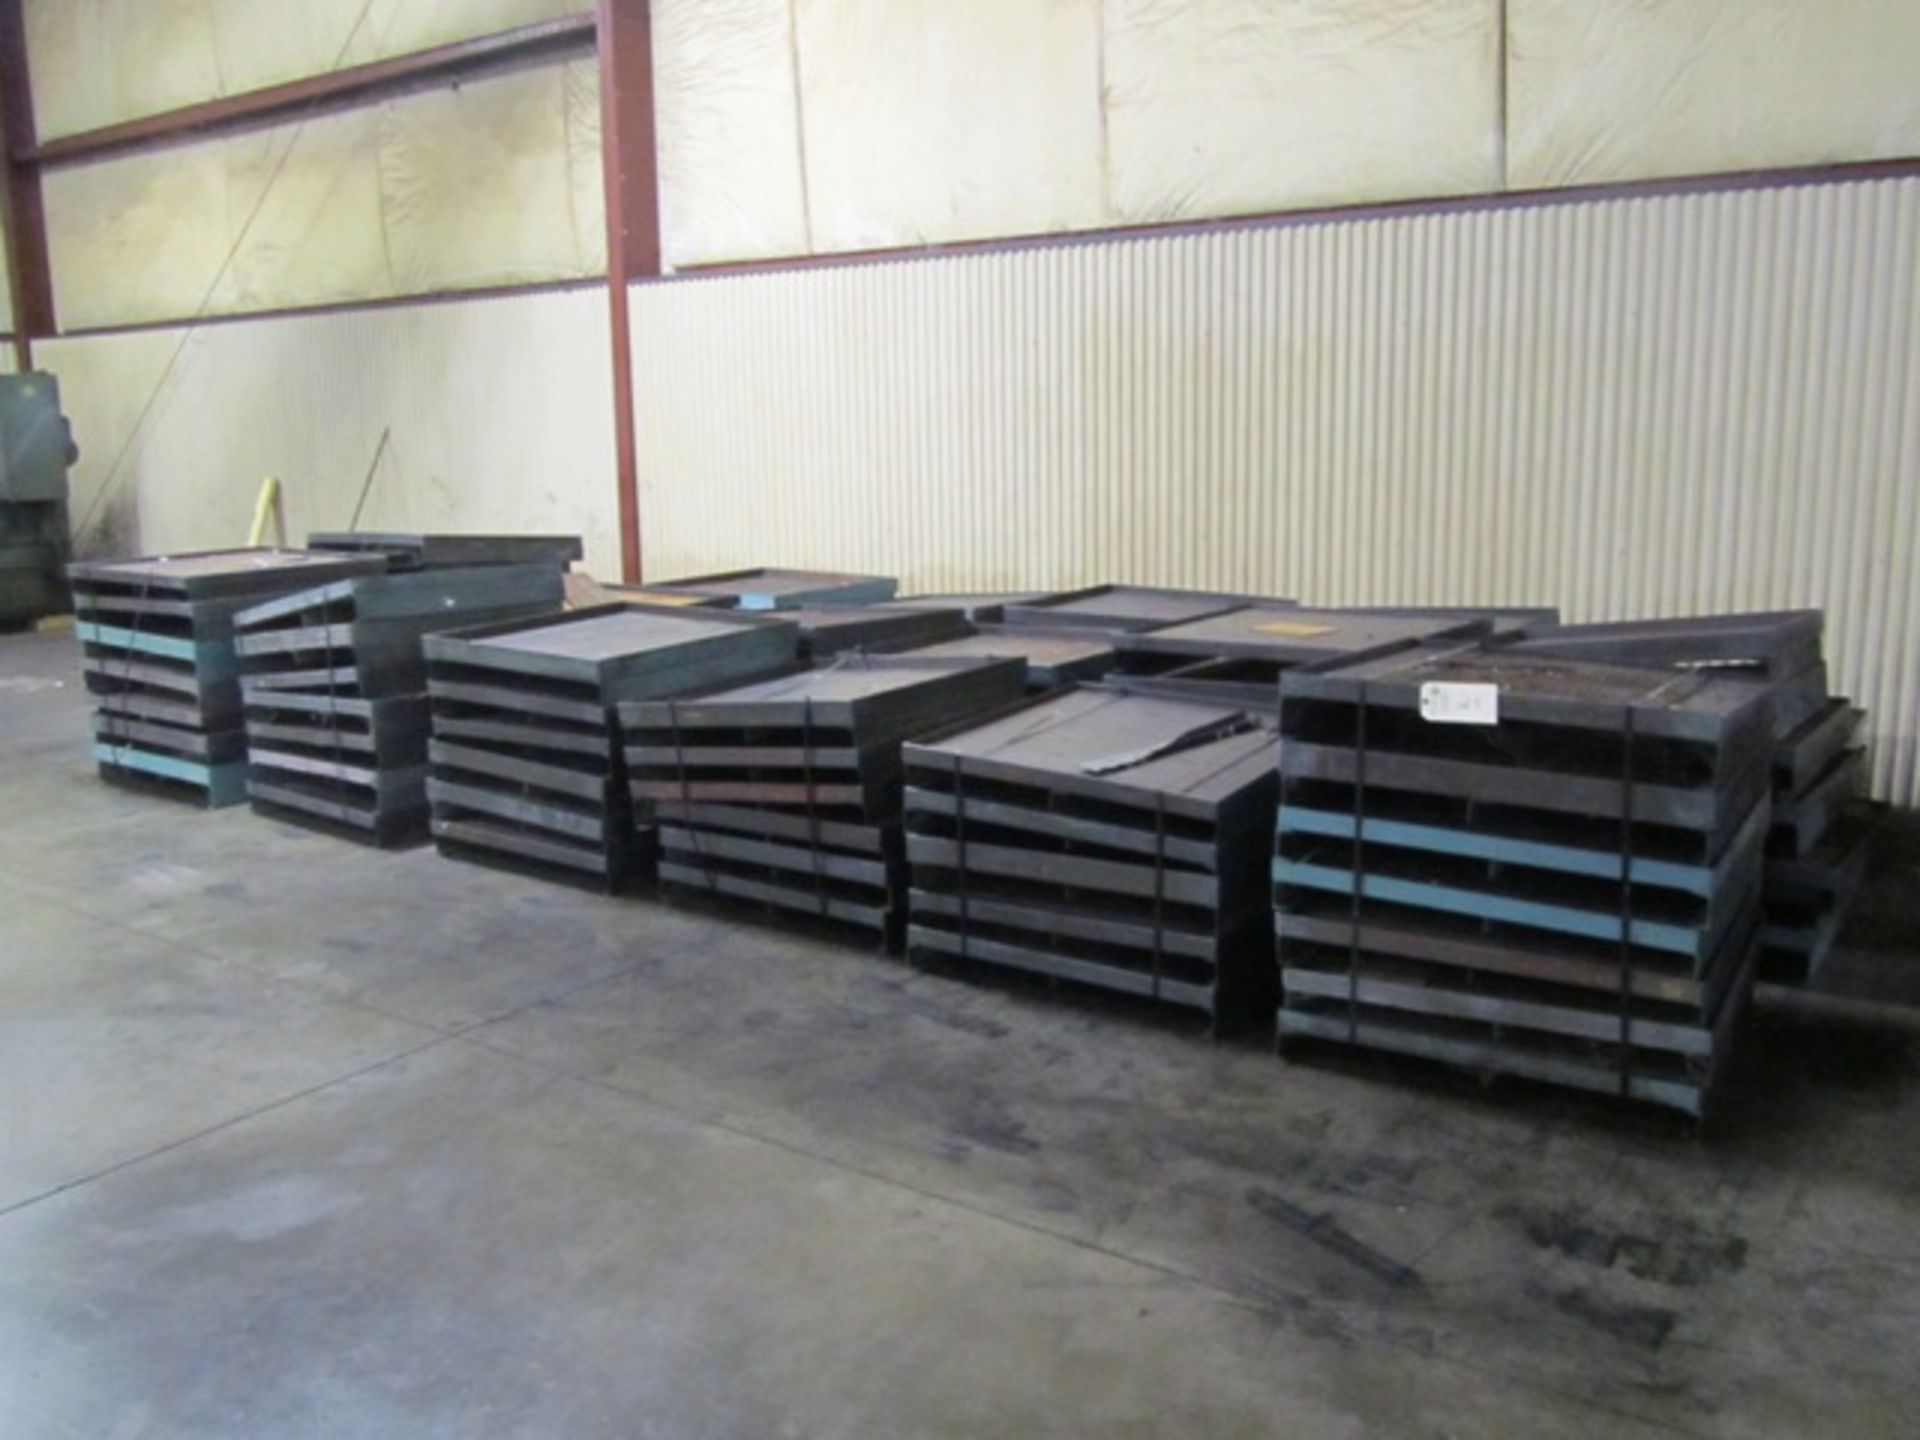 Approx (100) 3' x 3' Steel Pallets